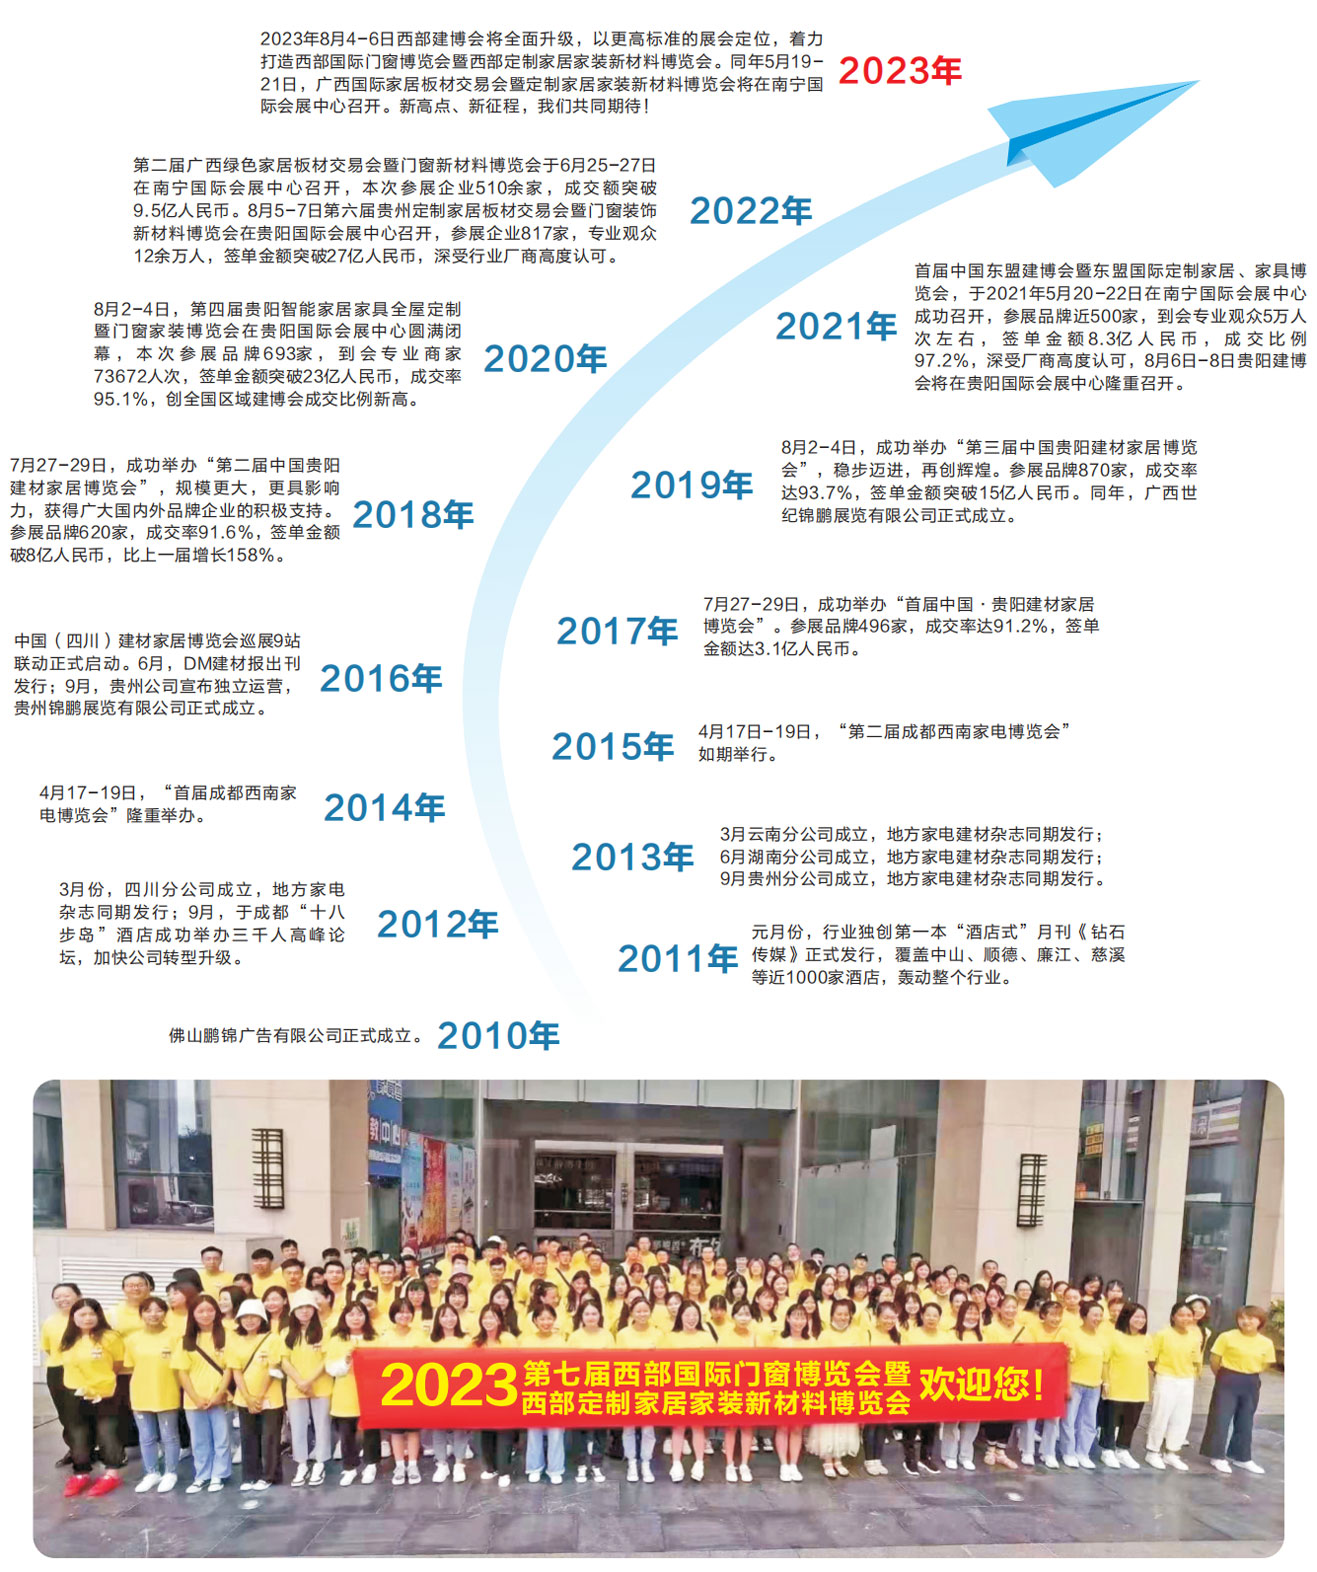 2023中国西部建博会zscm.net.cn_03.jpg